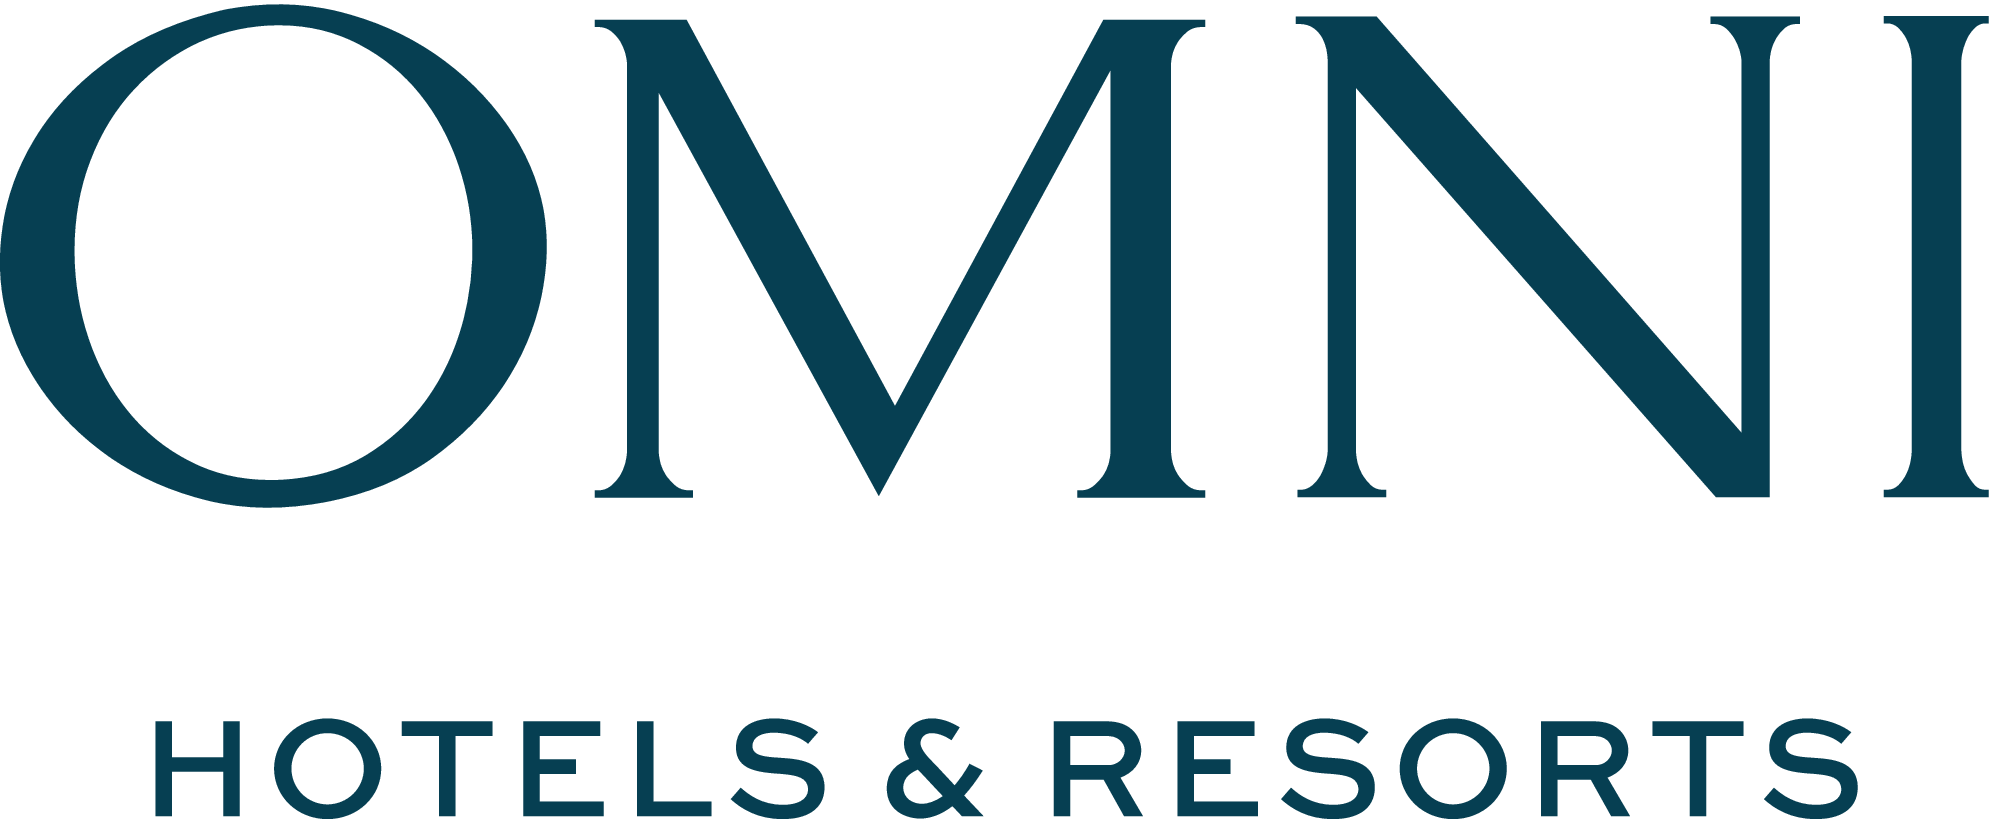 Omni Hotels & Resorts Company Logo